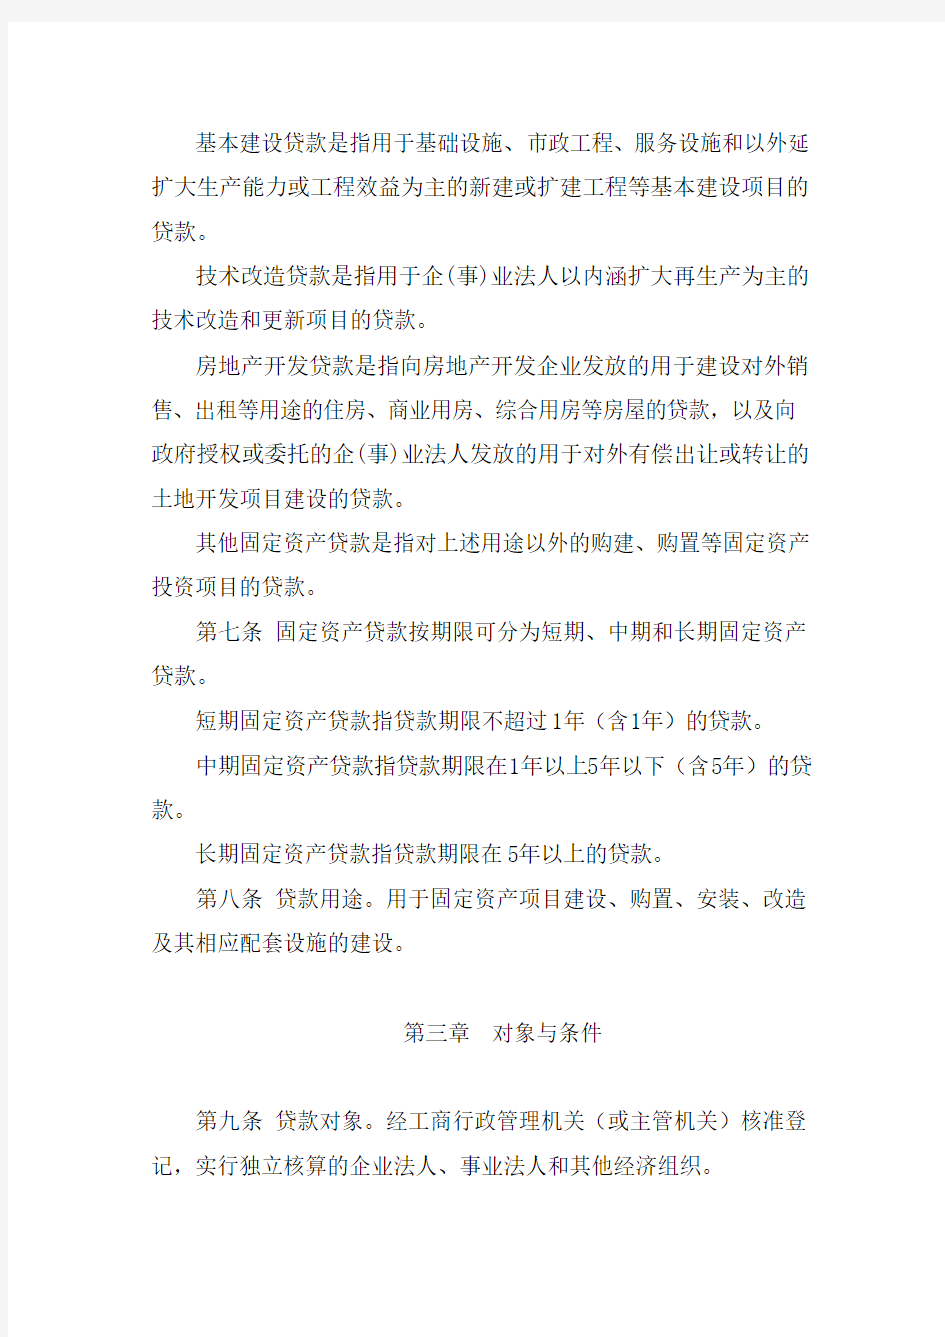 四川省农村信用社固定资产贷款管理暂行办法